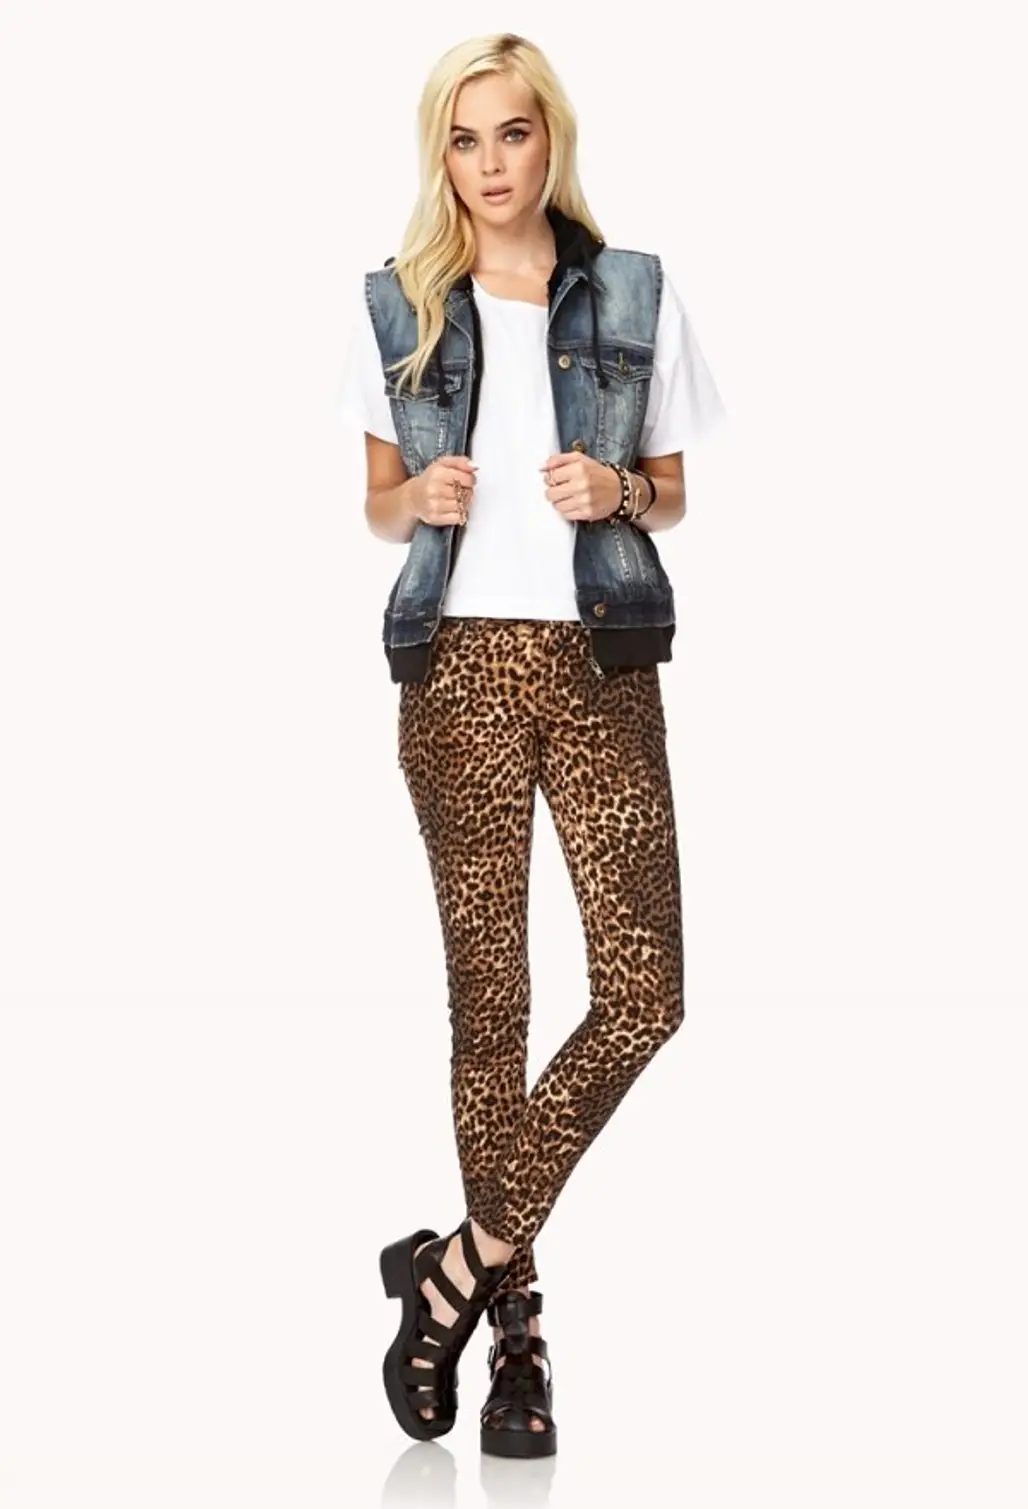 Forever 21 – Untamed Leopard Skinny Jeans